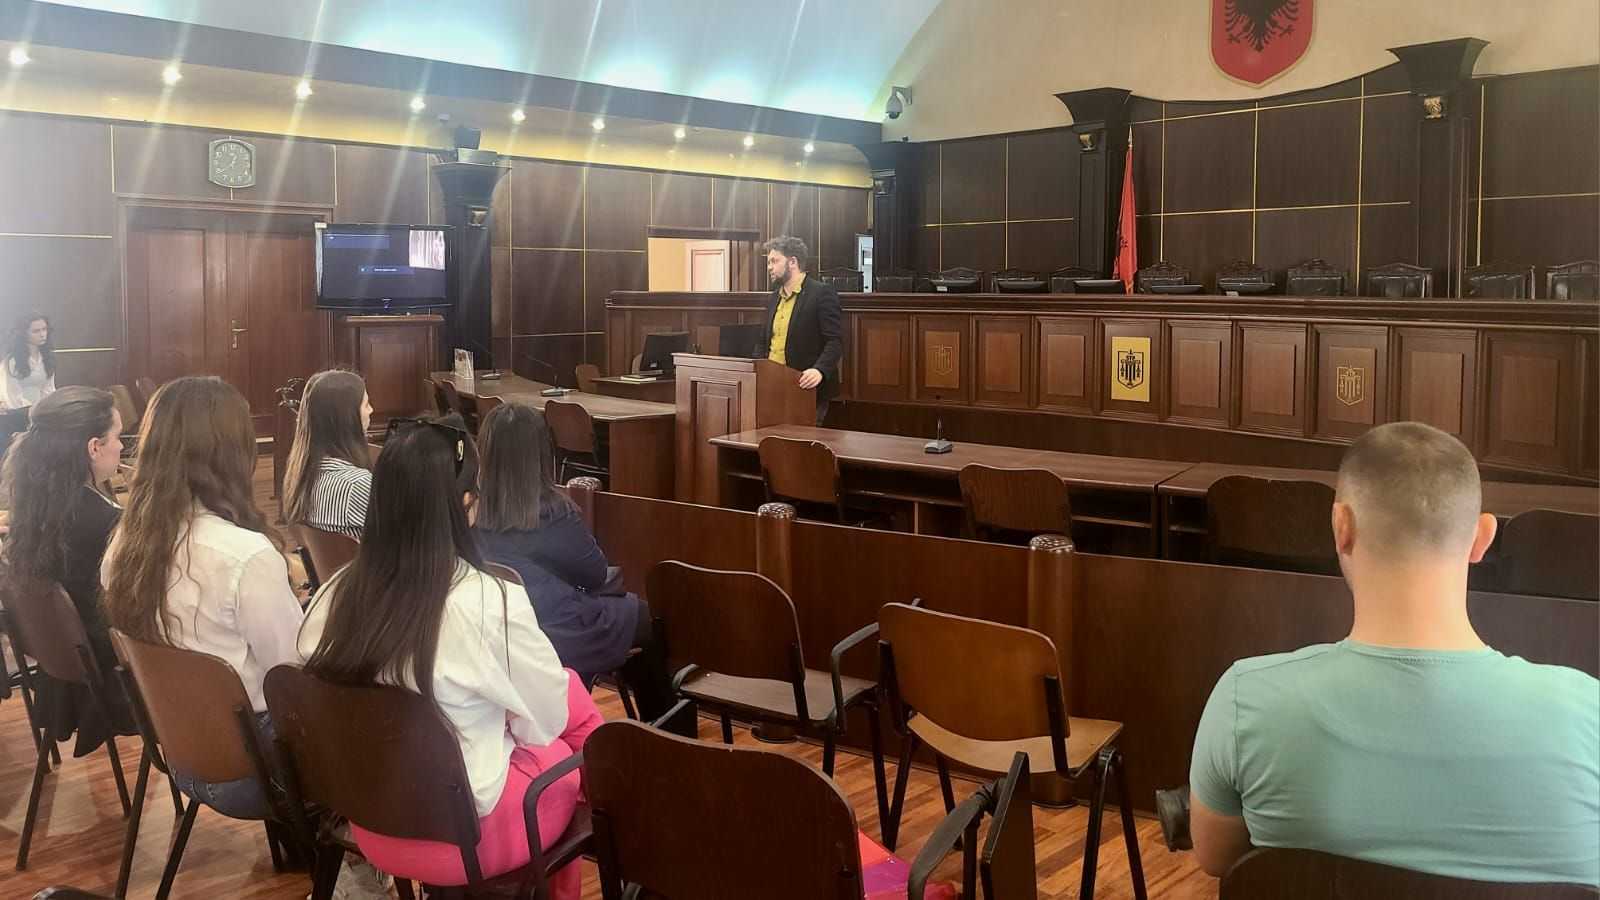 Studentë të Fakultetit të Drejtësisë së Universitetit të Tiranës, anëtarë të klubit “Elita Studentore” në bashkëpunim me Gjykatën e Lartë organizuan një praktikë mësimore në ambientet e gjykatës.